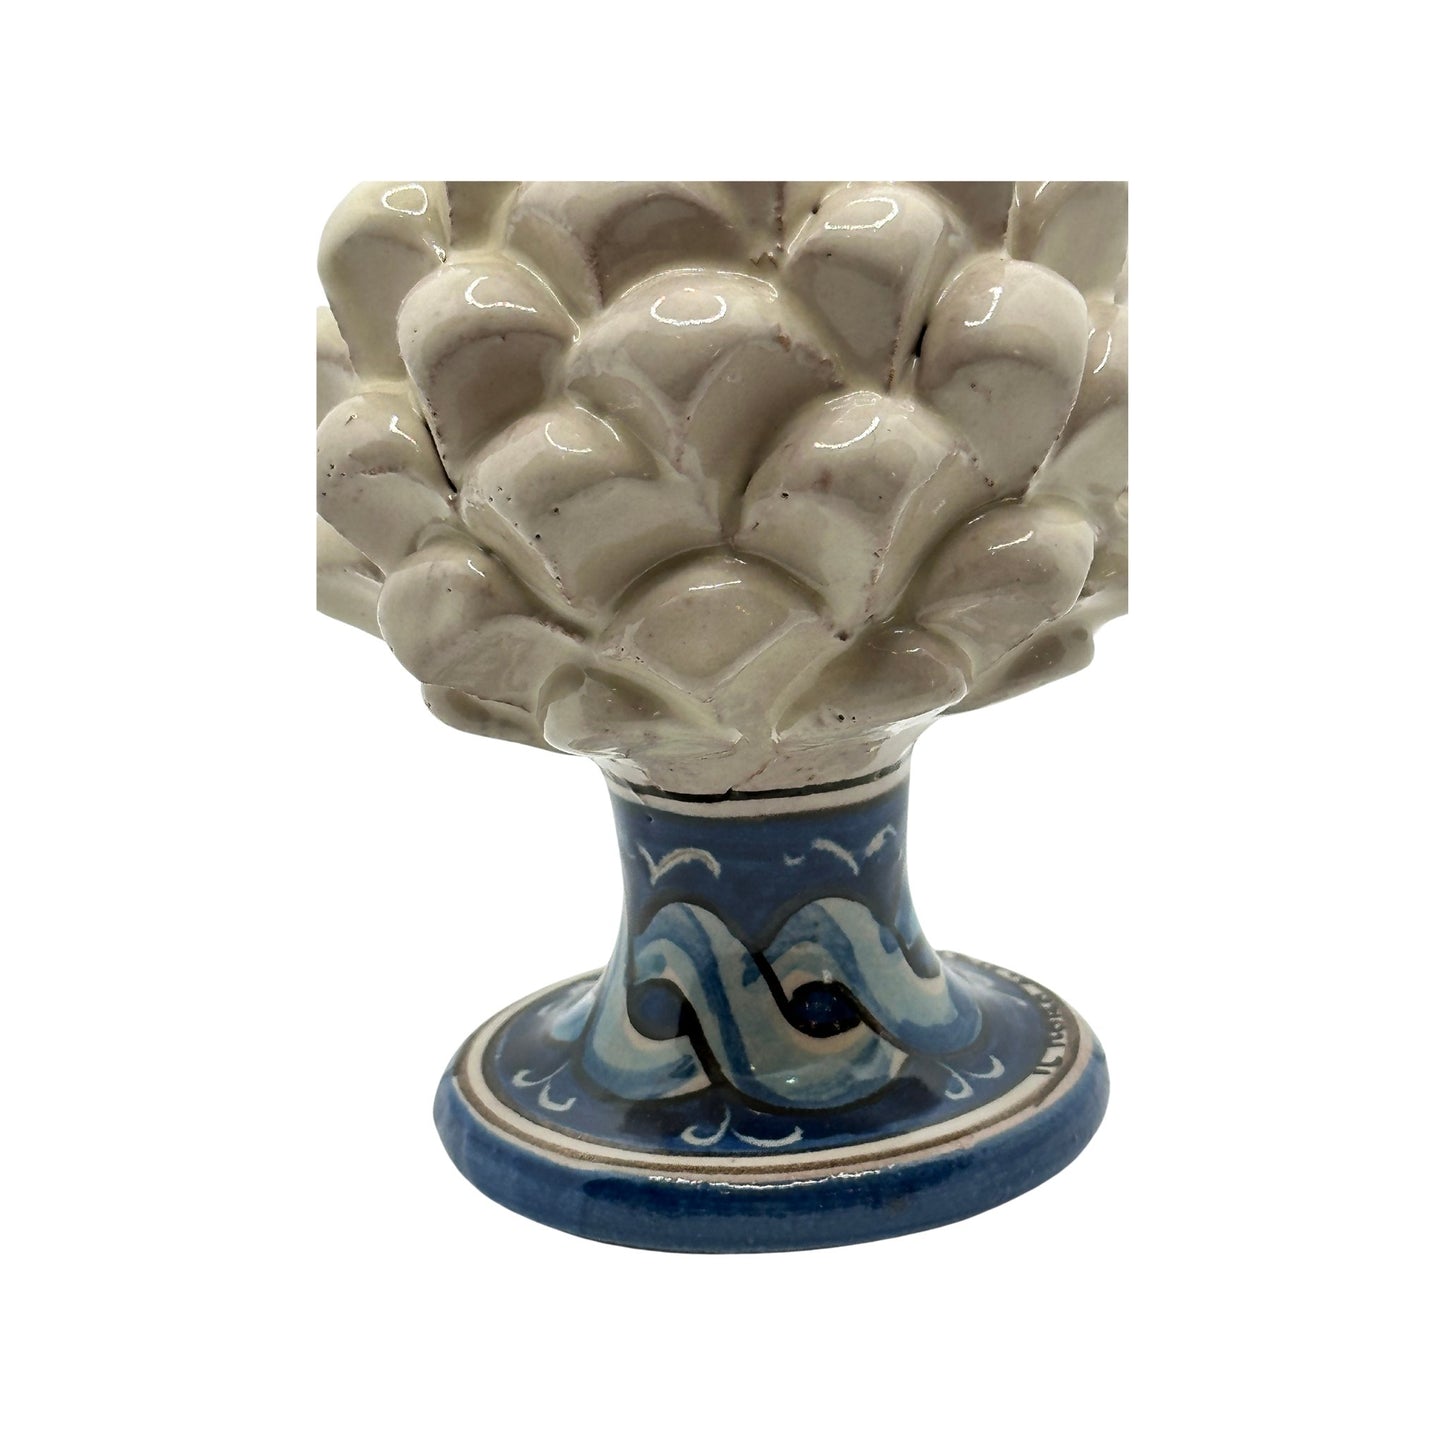 Pigna siciliana artigianale con decori, Santo Stefano di Camastra - Ceramiche artigianali Santo Stefano di Camastra - Maravigghia for Sicily